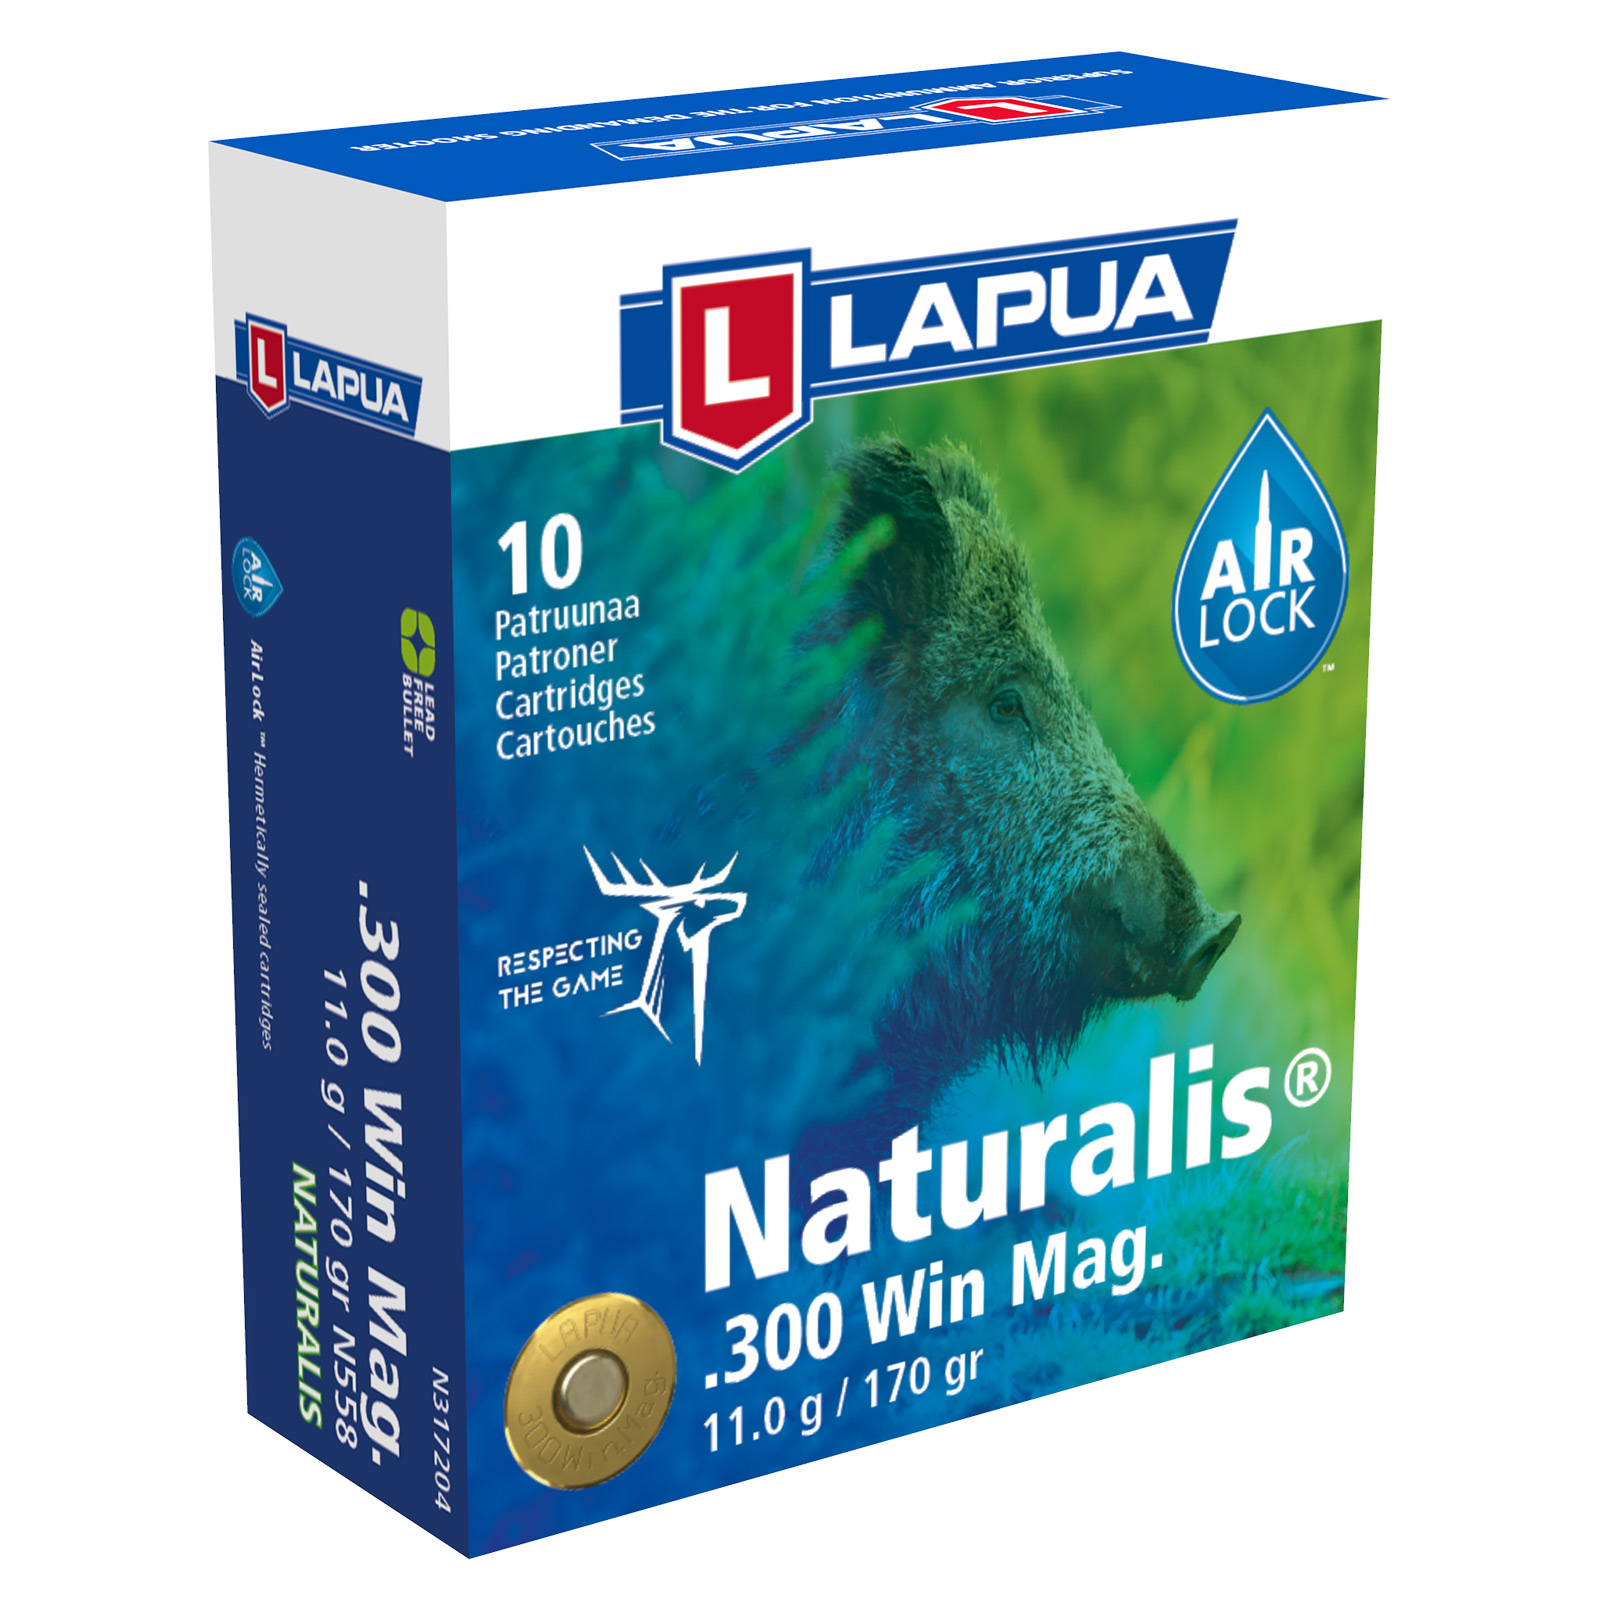 LAPUA .300 Win Mag Naturalis 11g / 170grs